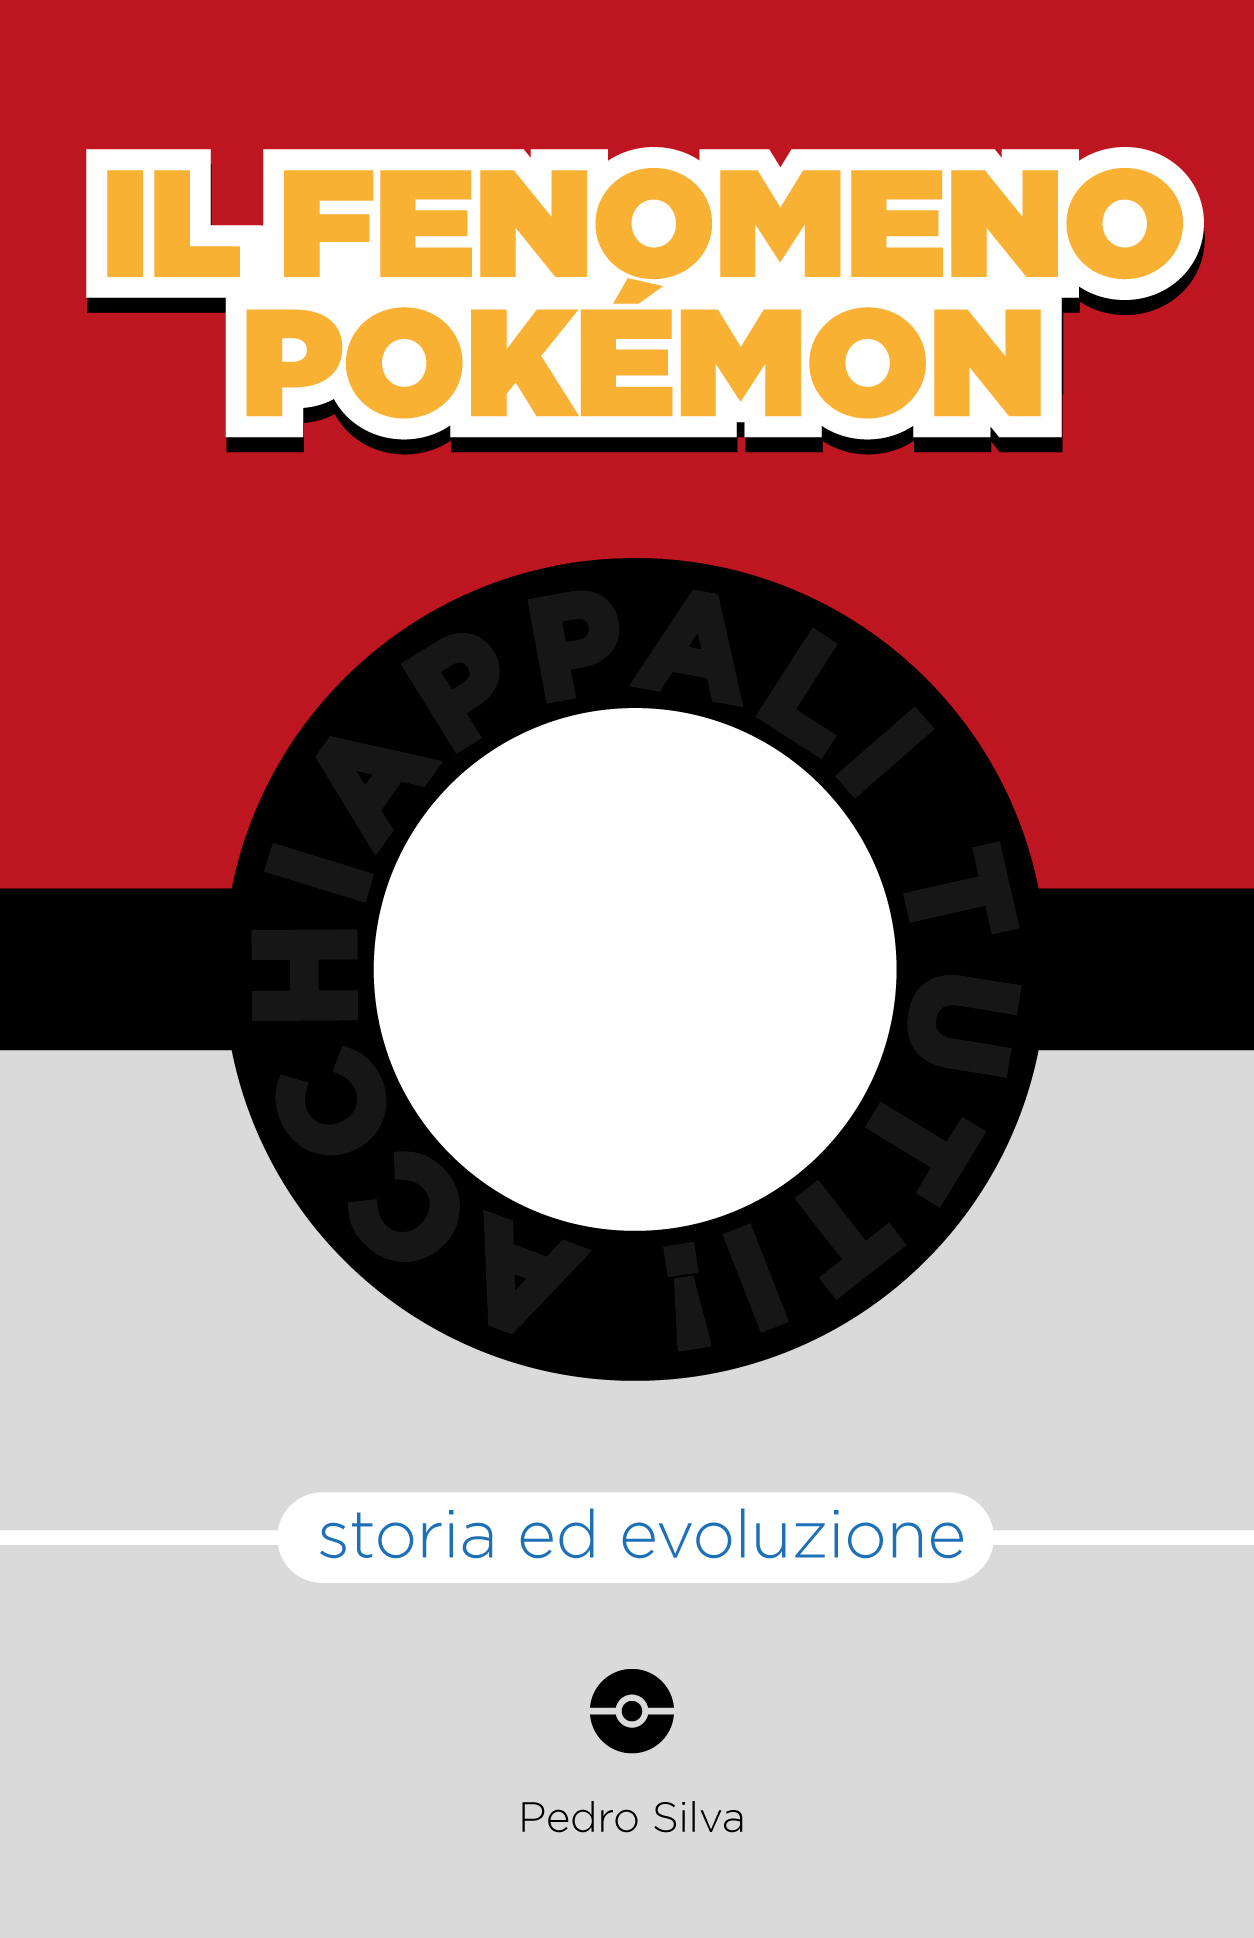 Il fenomeno Pokémon – Storia ed evoluzione